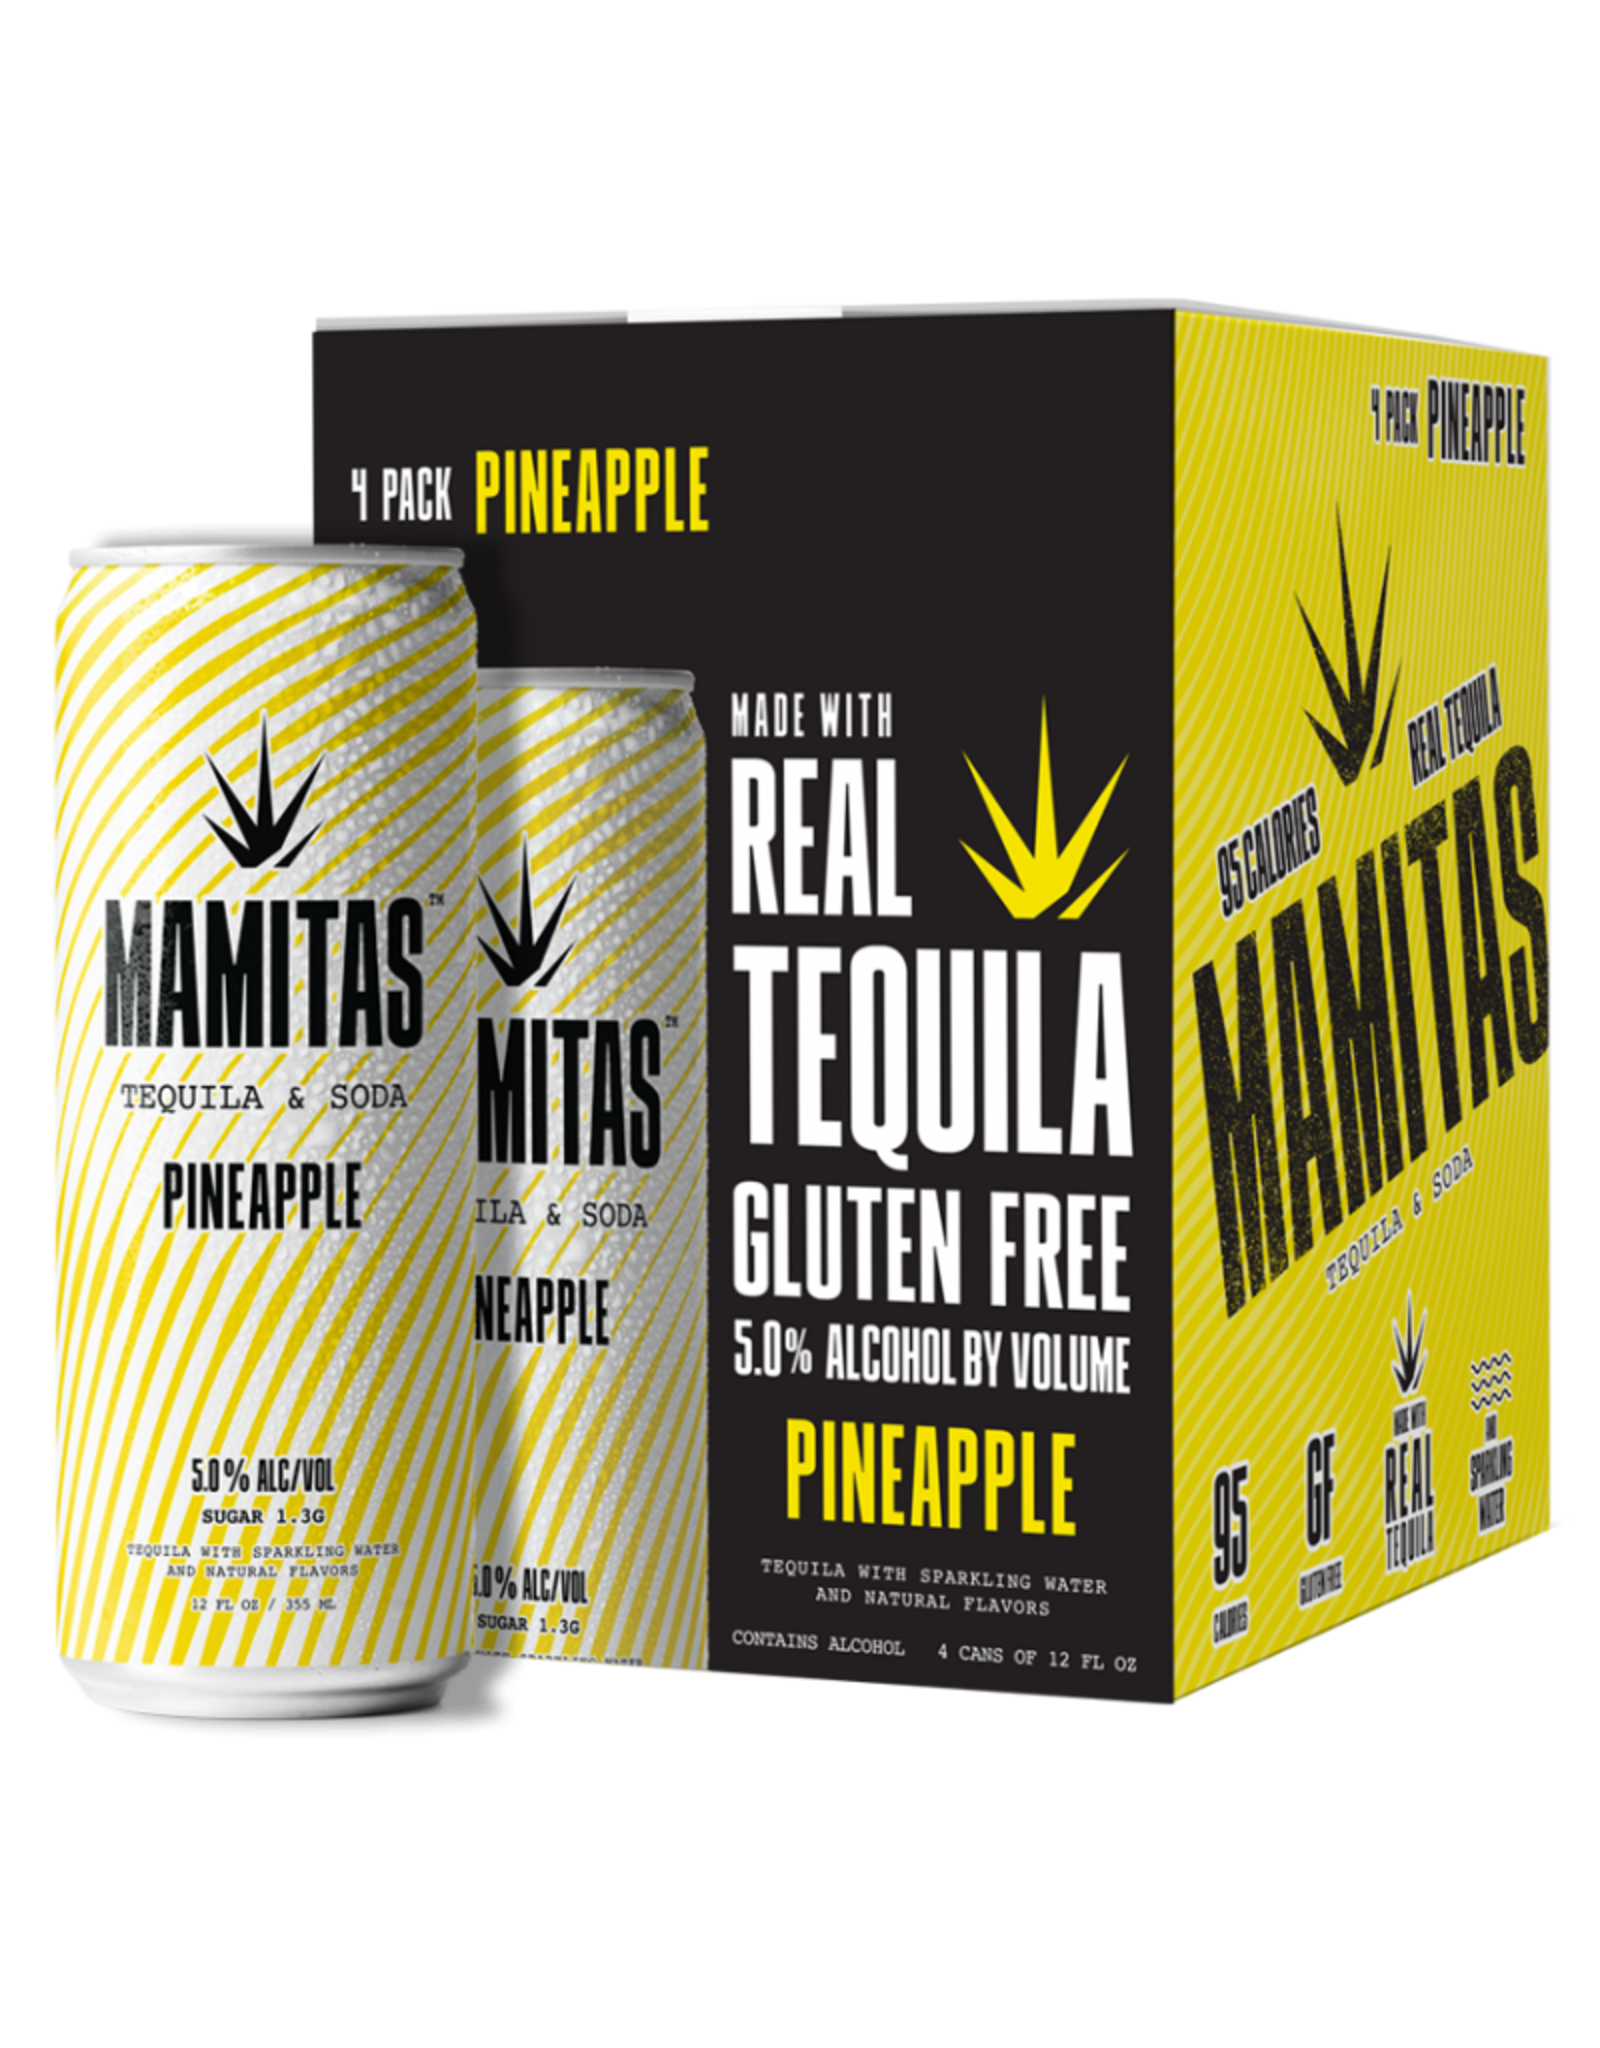 Mamitas Mamitas Tequila & Soda Pineapple